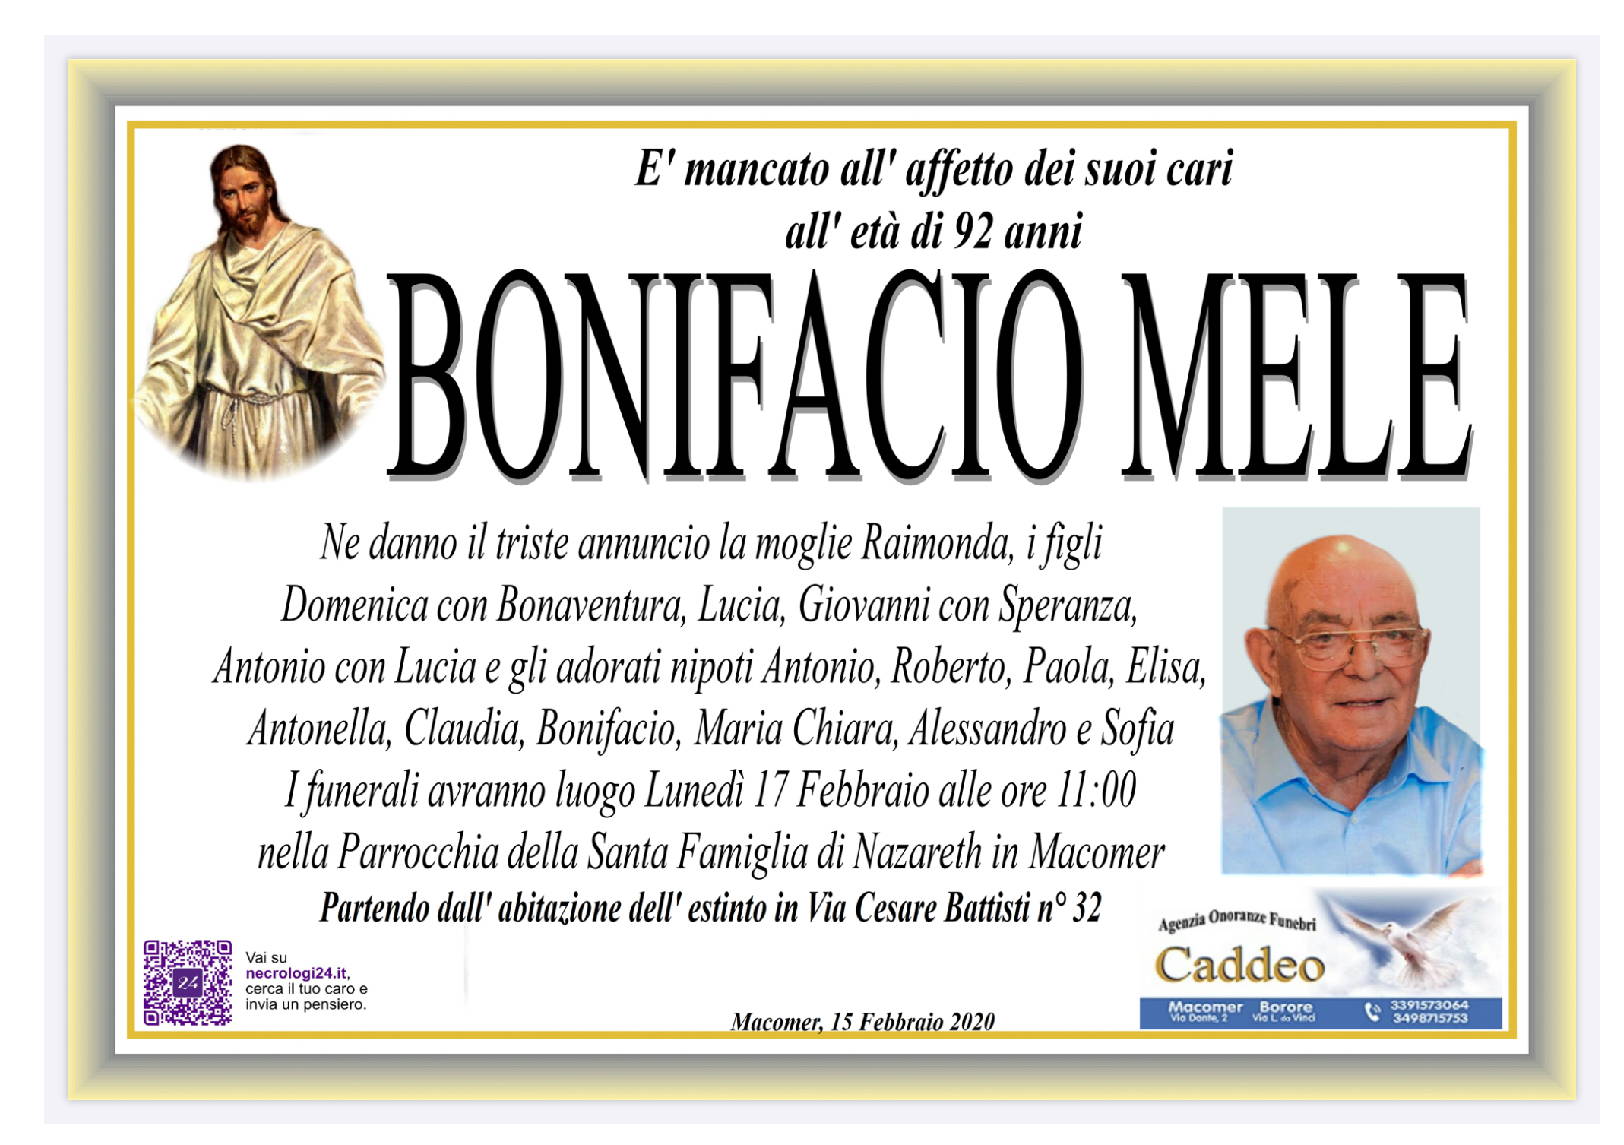 Bonifacio Mele